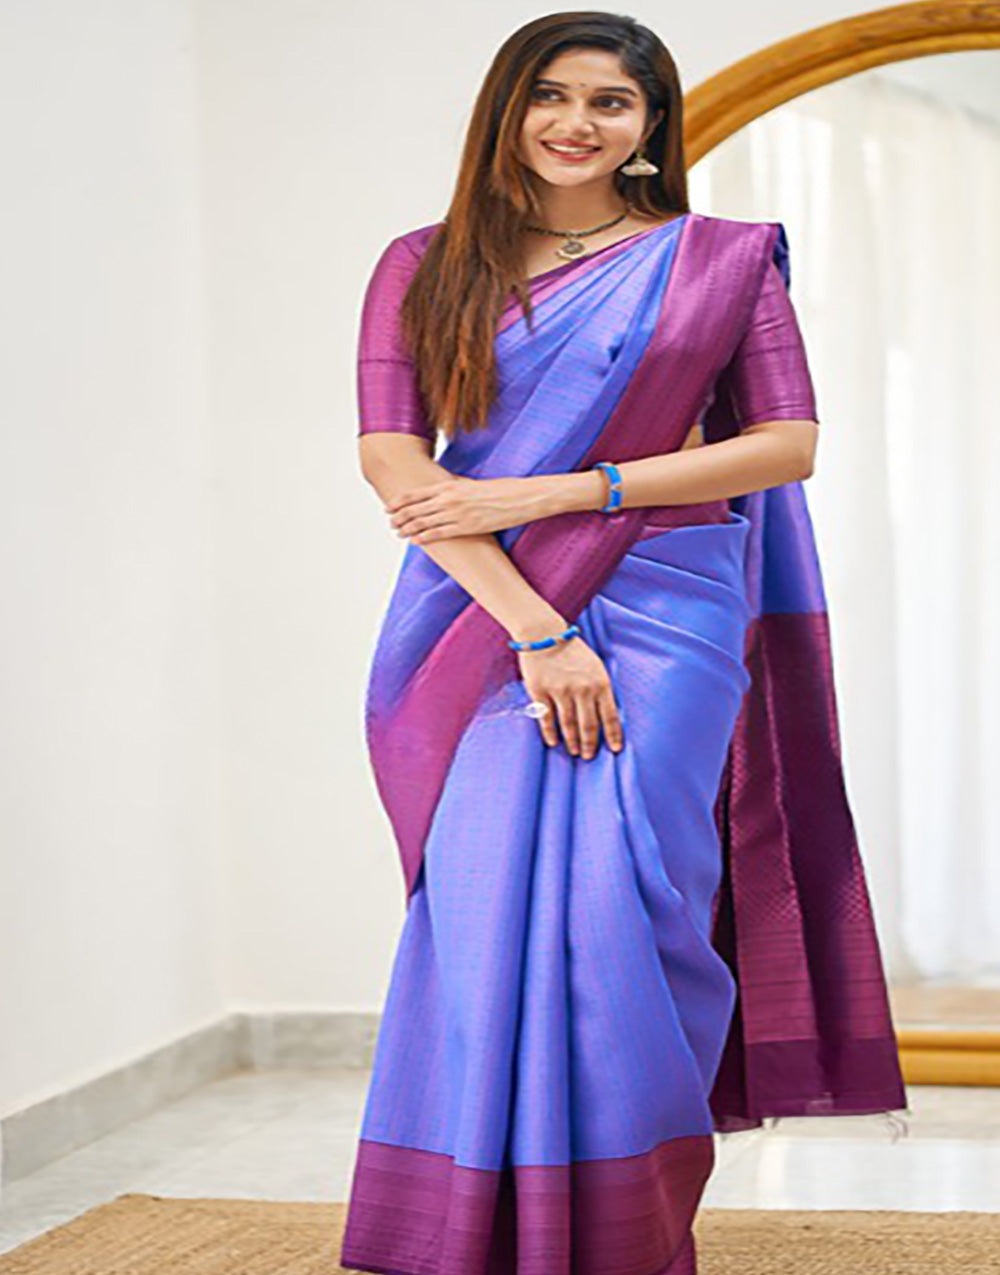 Purblish Blue Banarasi Soft Silk Saree With Zari Weaving Work